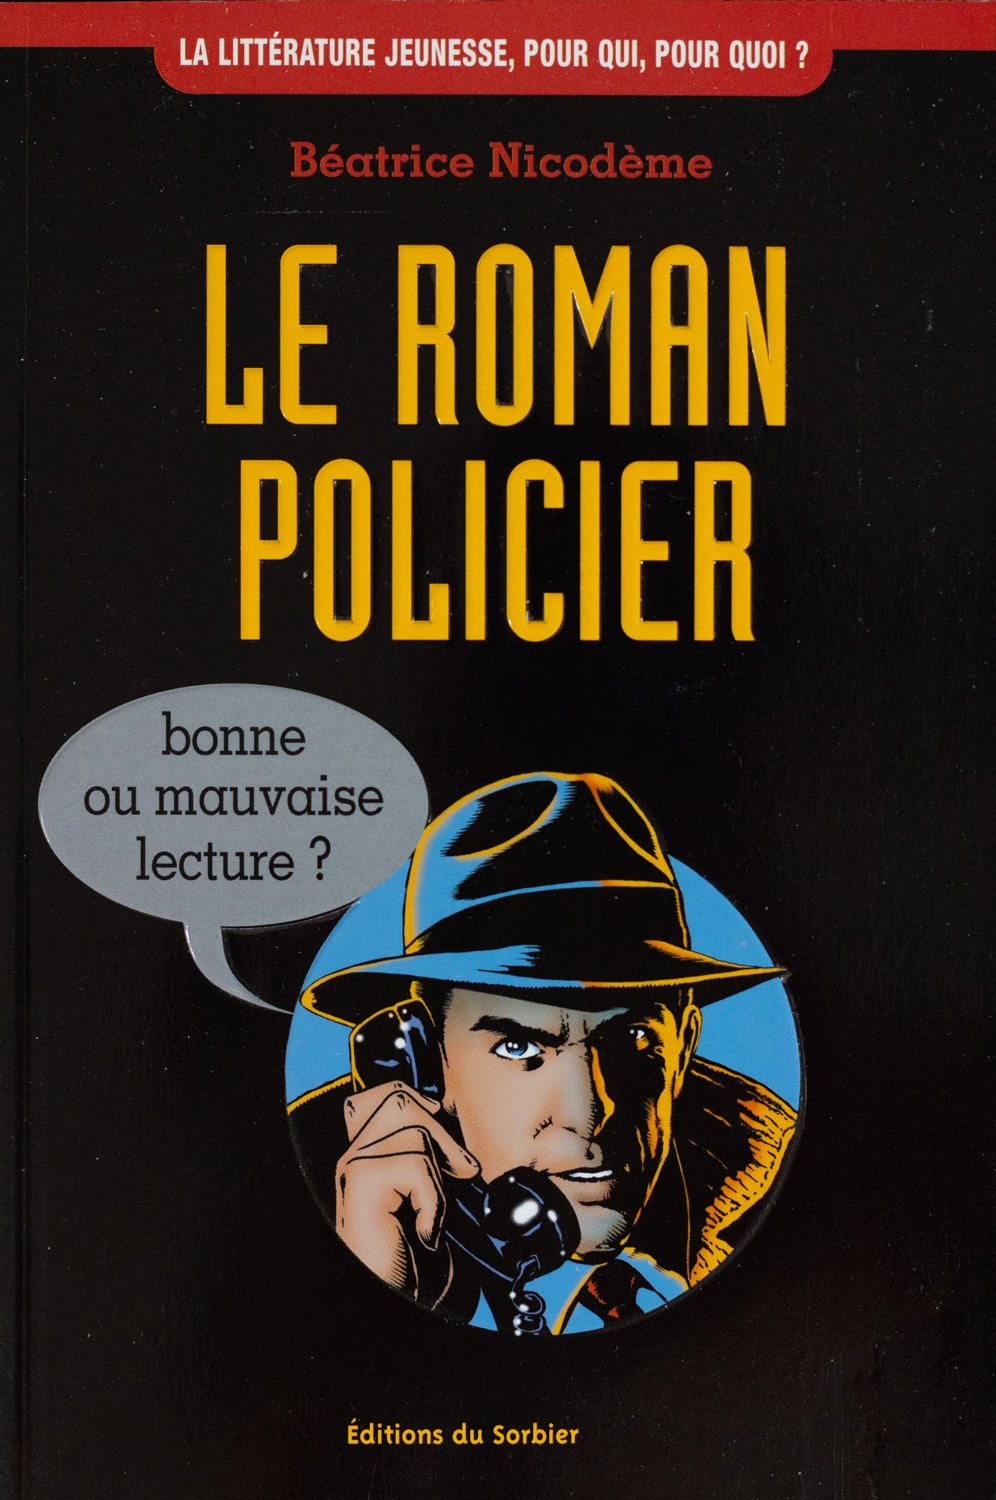 Beatrice Nicodeme autrice couverture du documentaire Le roman policier bonne ou mauvaise lecture